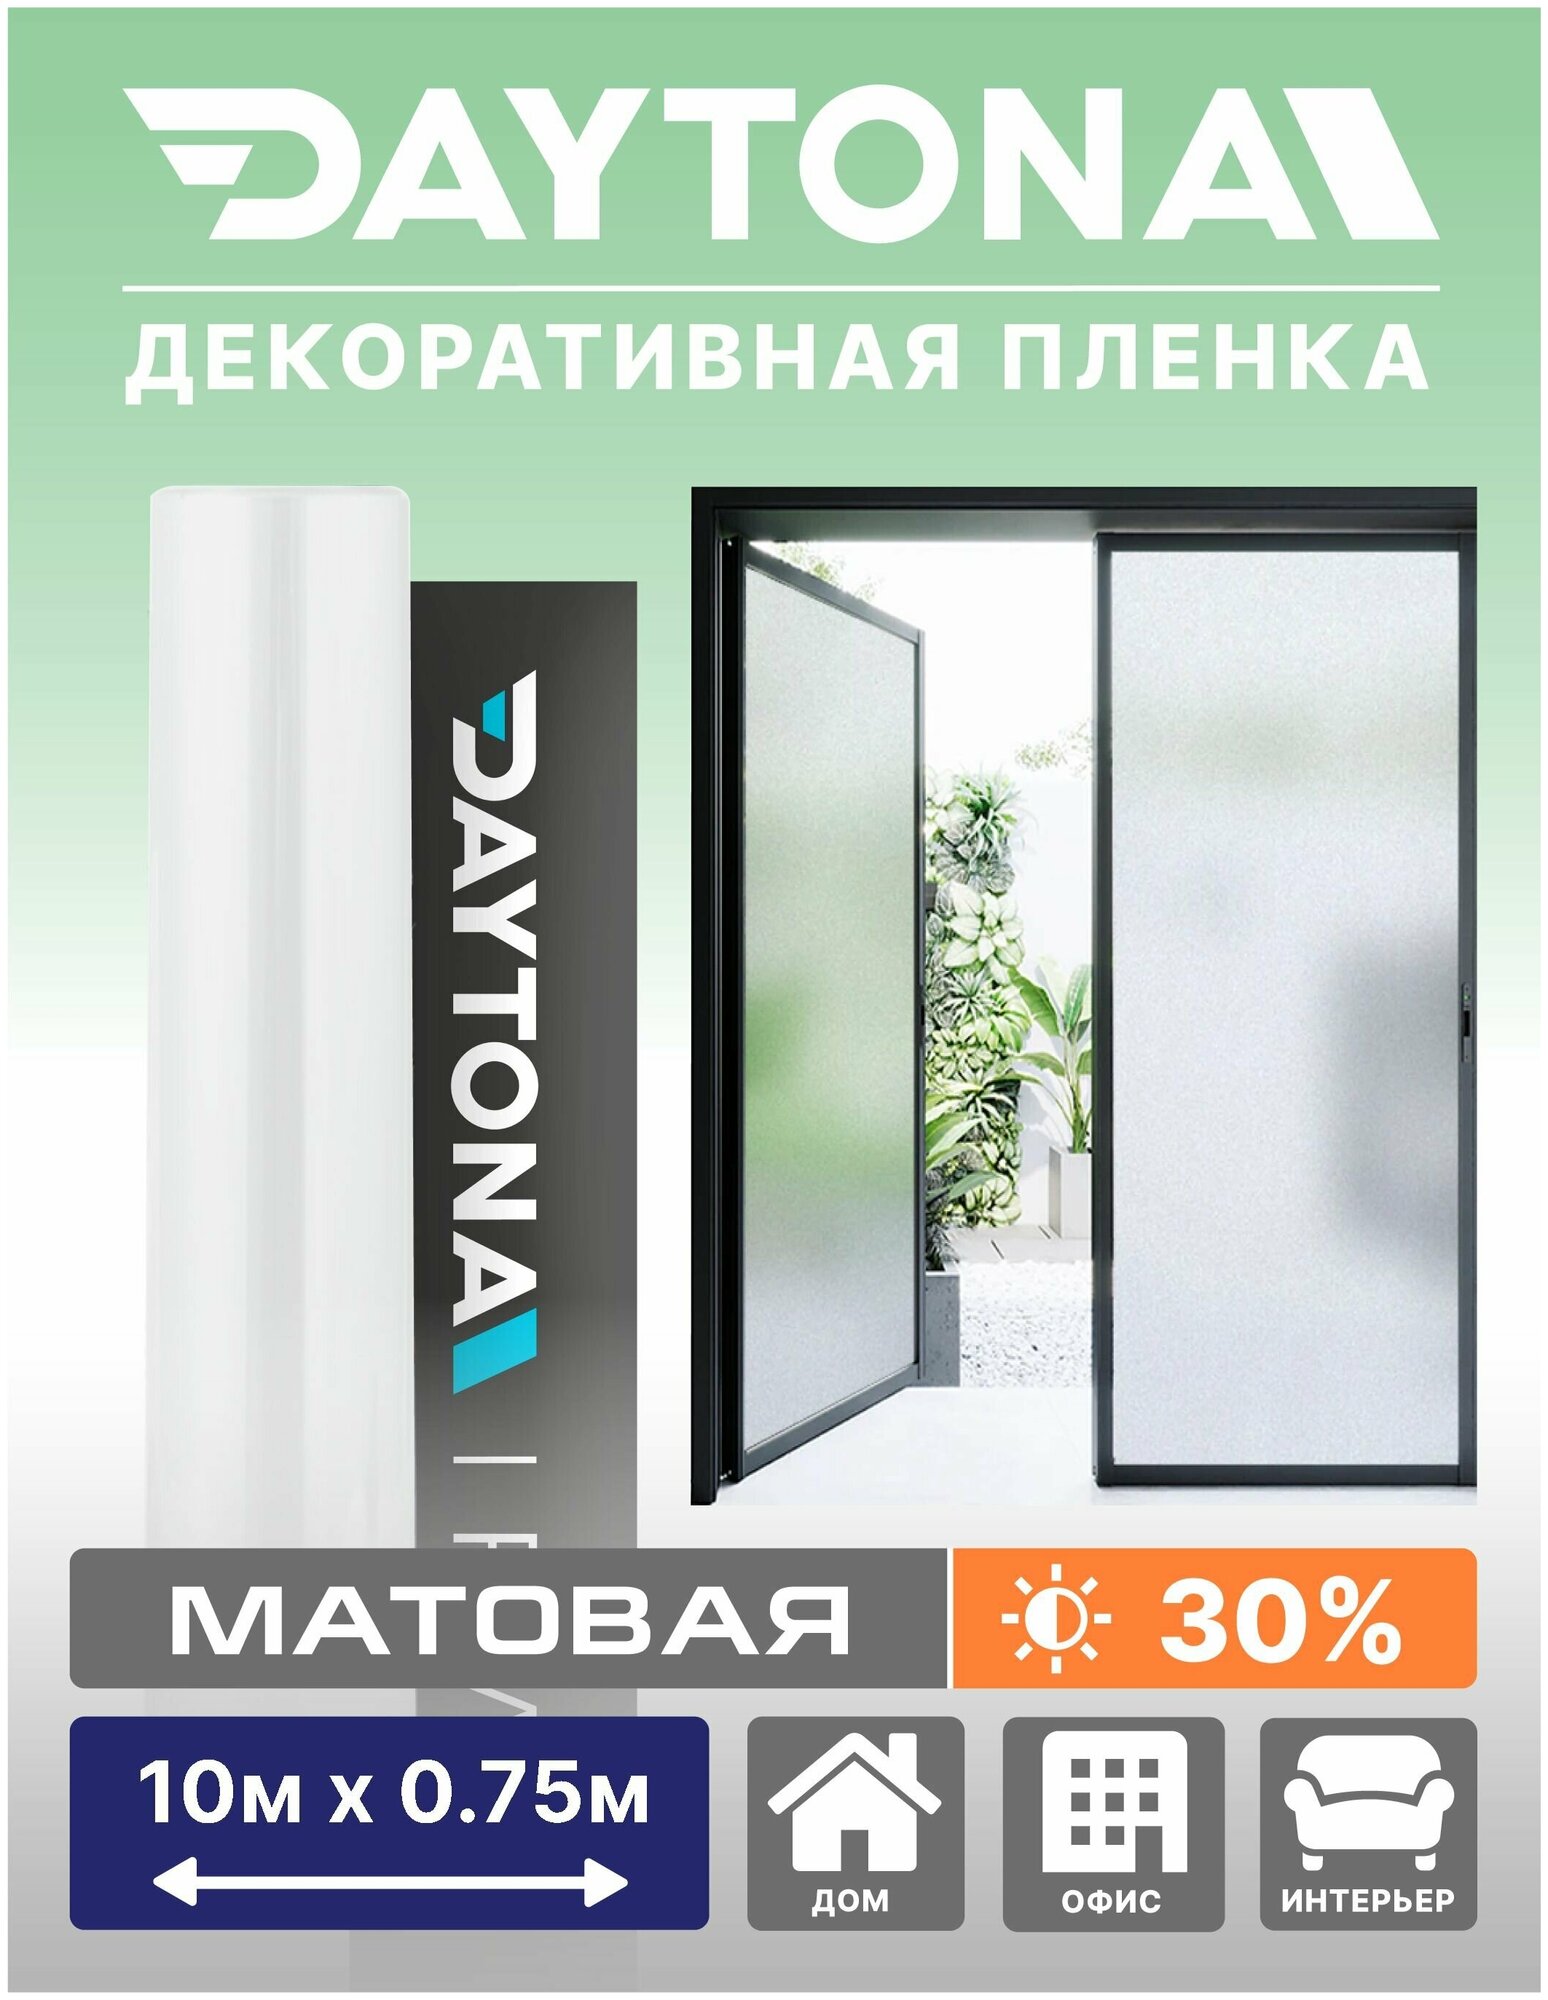 Матовая пленка на окно белая 30% (10м х 0.75м) DAYTONA. Декоративная защита для окон